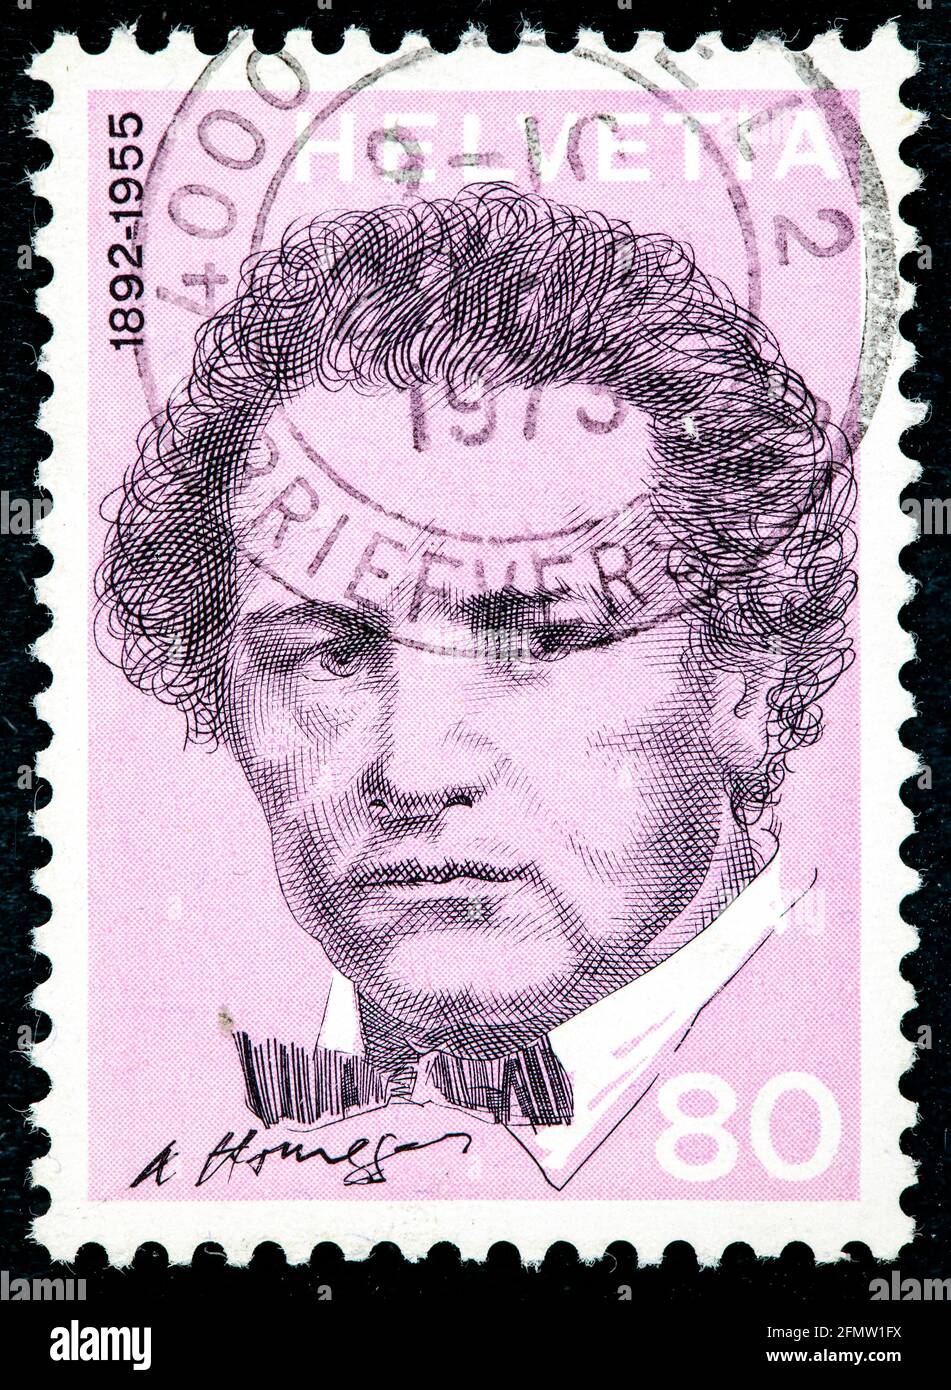 Svizzera - circa 1972: Un francobollo stampato in SVIZZERA mostra un ritratto di Oscar Arthur Honegger la serie 'Ritratti e firme' intorno al 19 Foto Stock